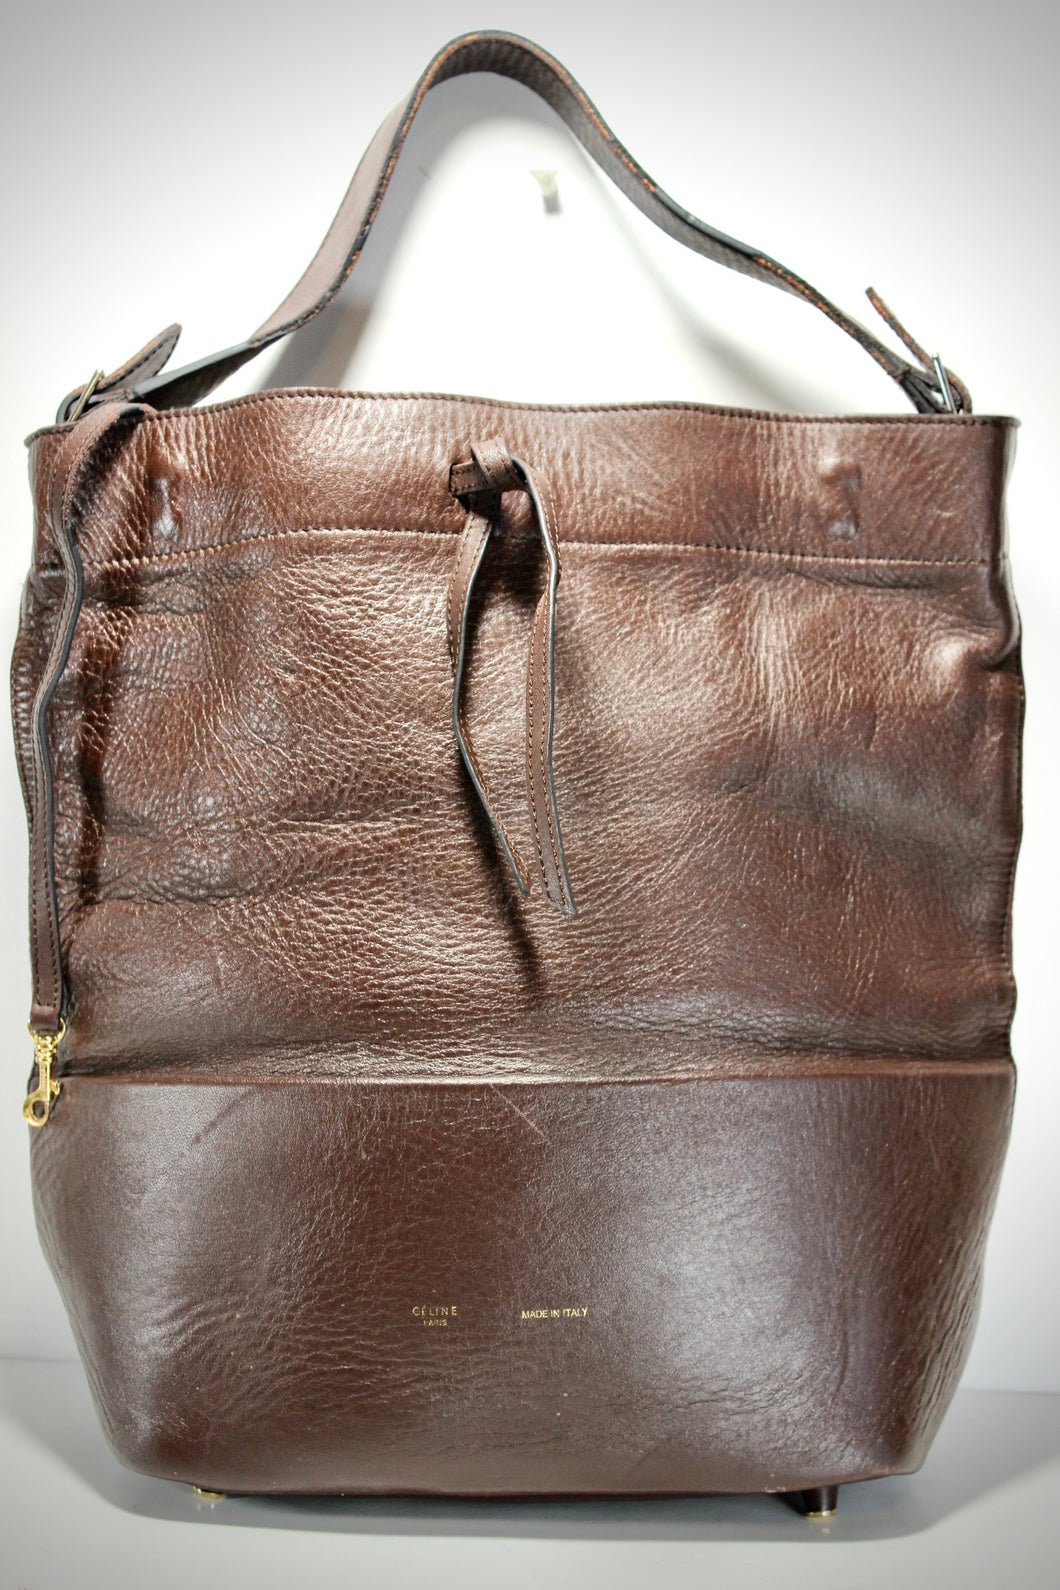 CELINE Brown Drawstring Leather Bucket Bag Tote Shoulder Bag Italy